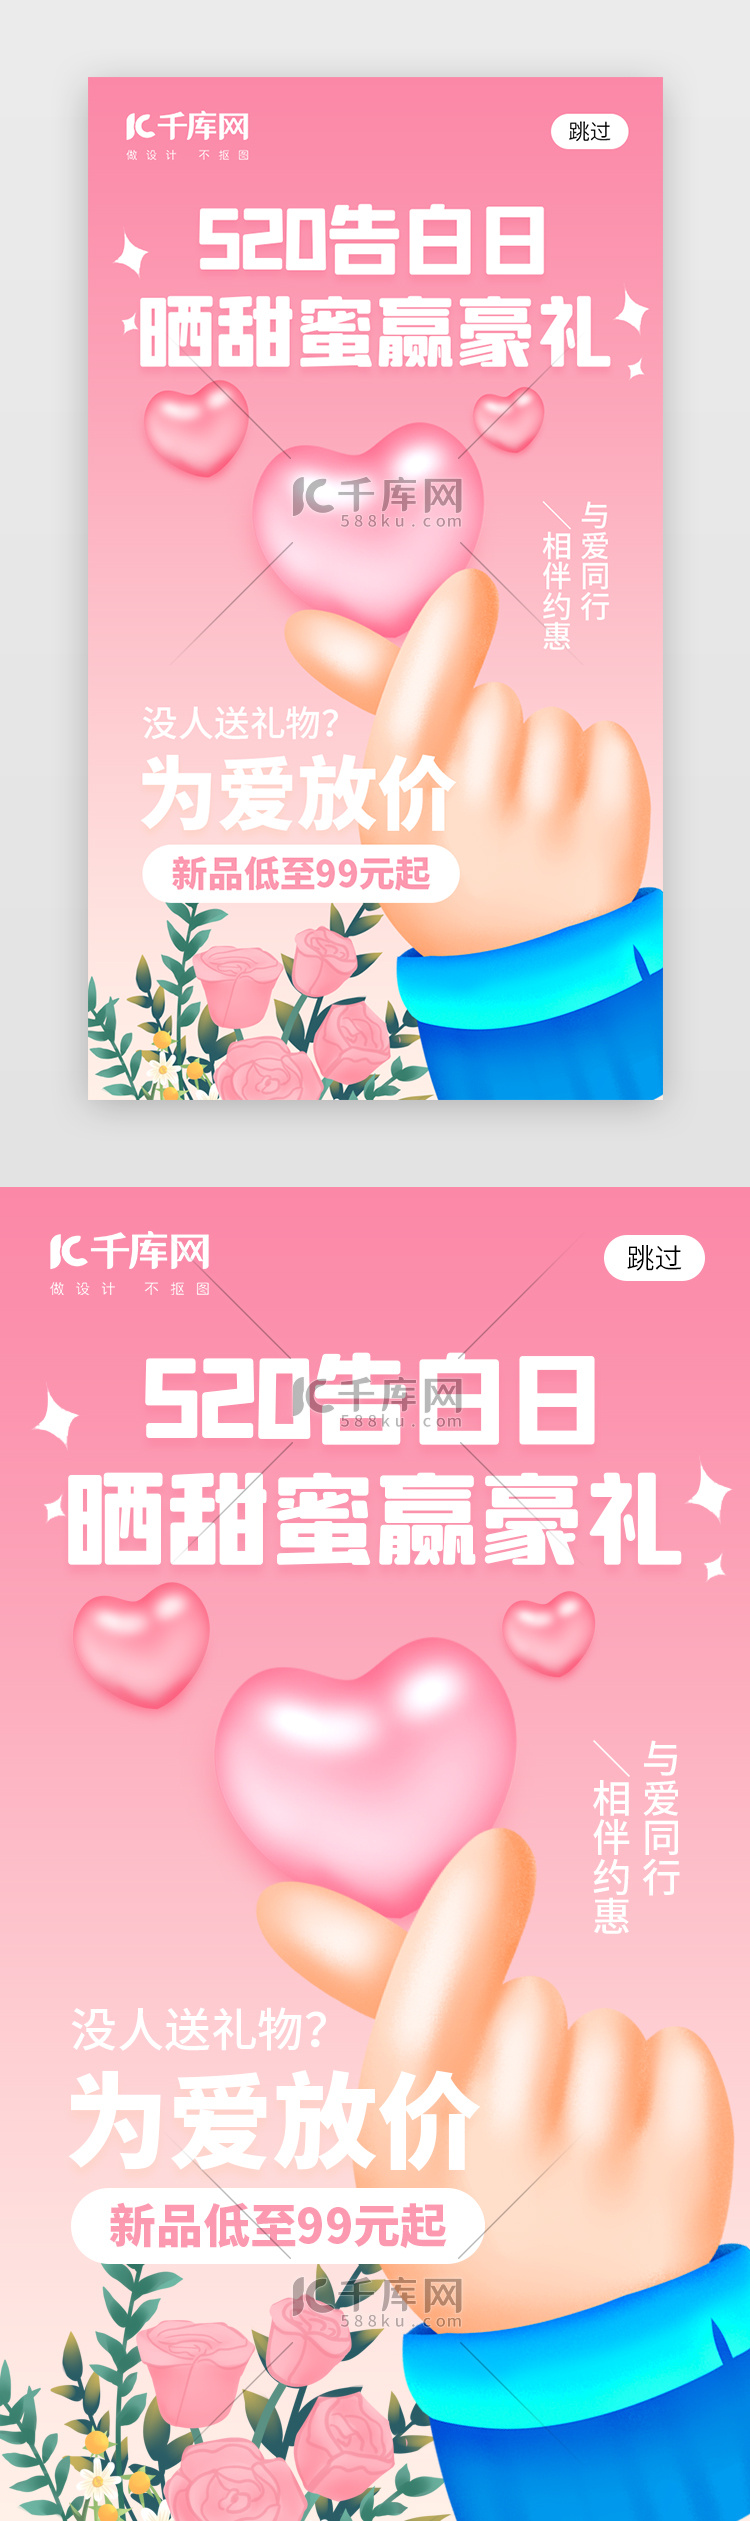 520告白日app闪屏创意粉色渐变比心